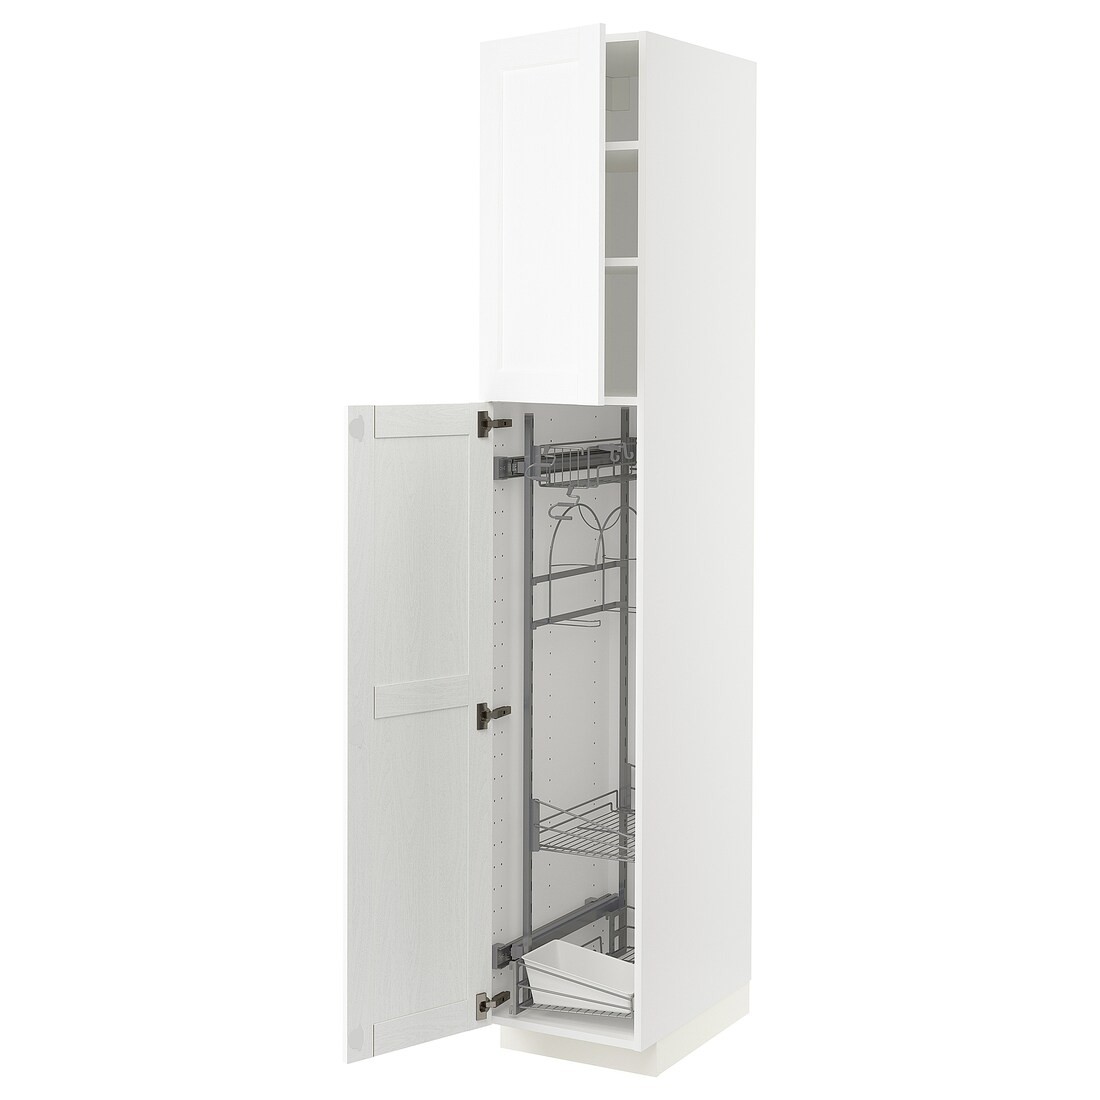 METOD МЕТОД Высокий шкаф с отделением для аксессуаров для уборки, белый Enköping / белый имитация дерева, 40x60x220 см